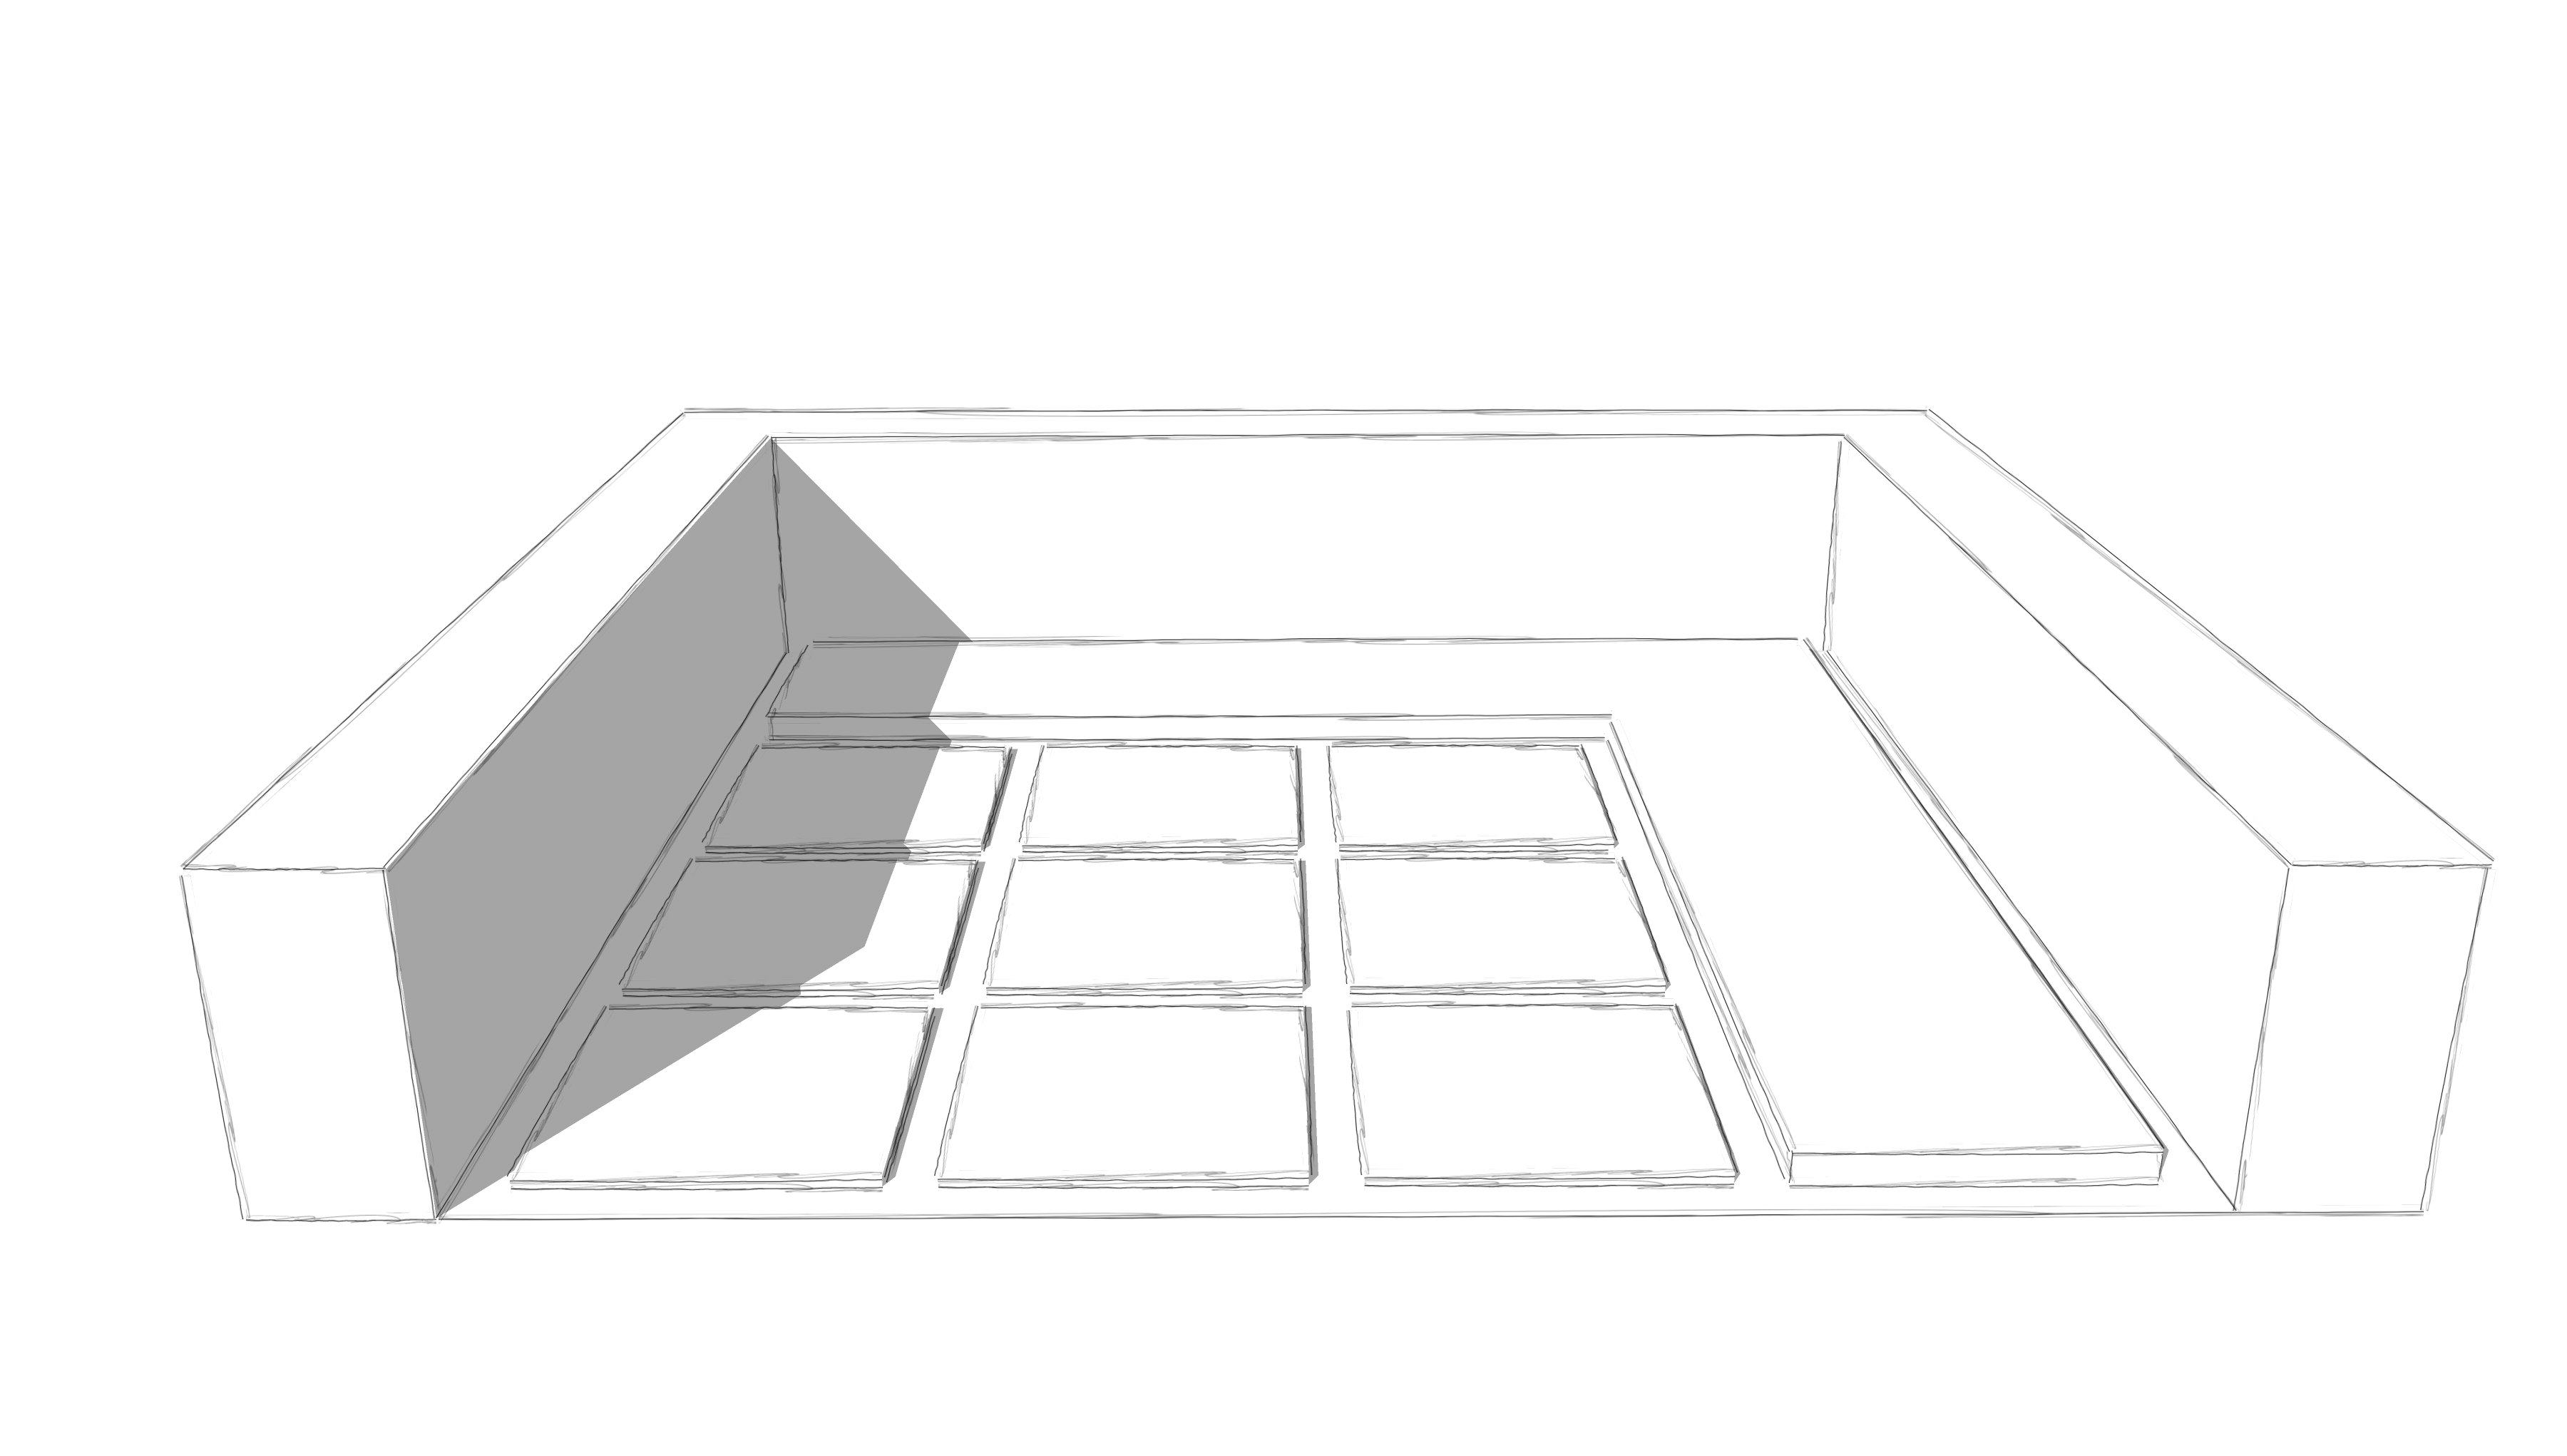 Patio mit Sitzplatz aus Grossformatplatten, Hochbeet mit Cortenstahleinfassung und Heckeneinfriedung